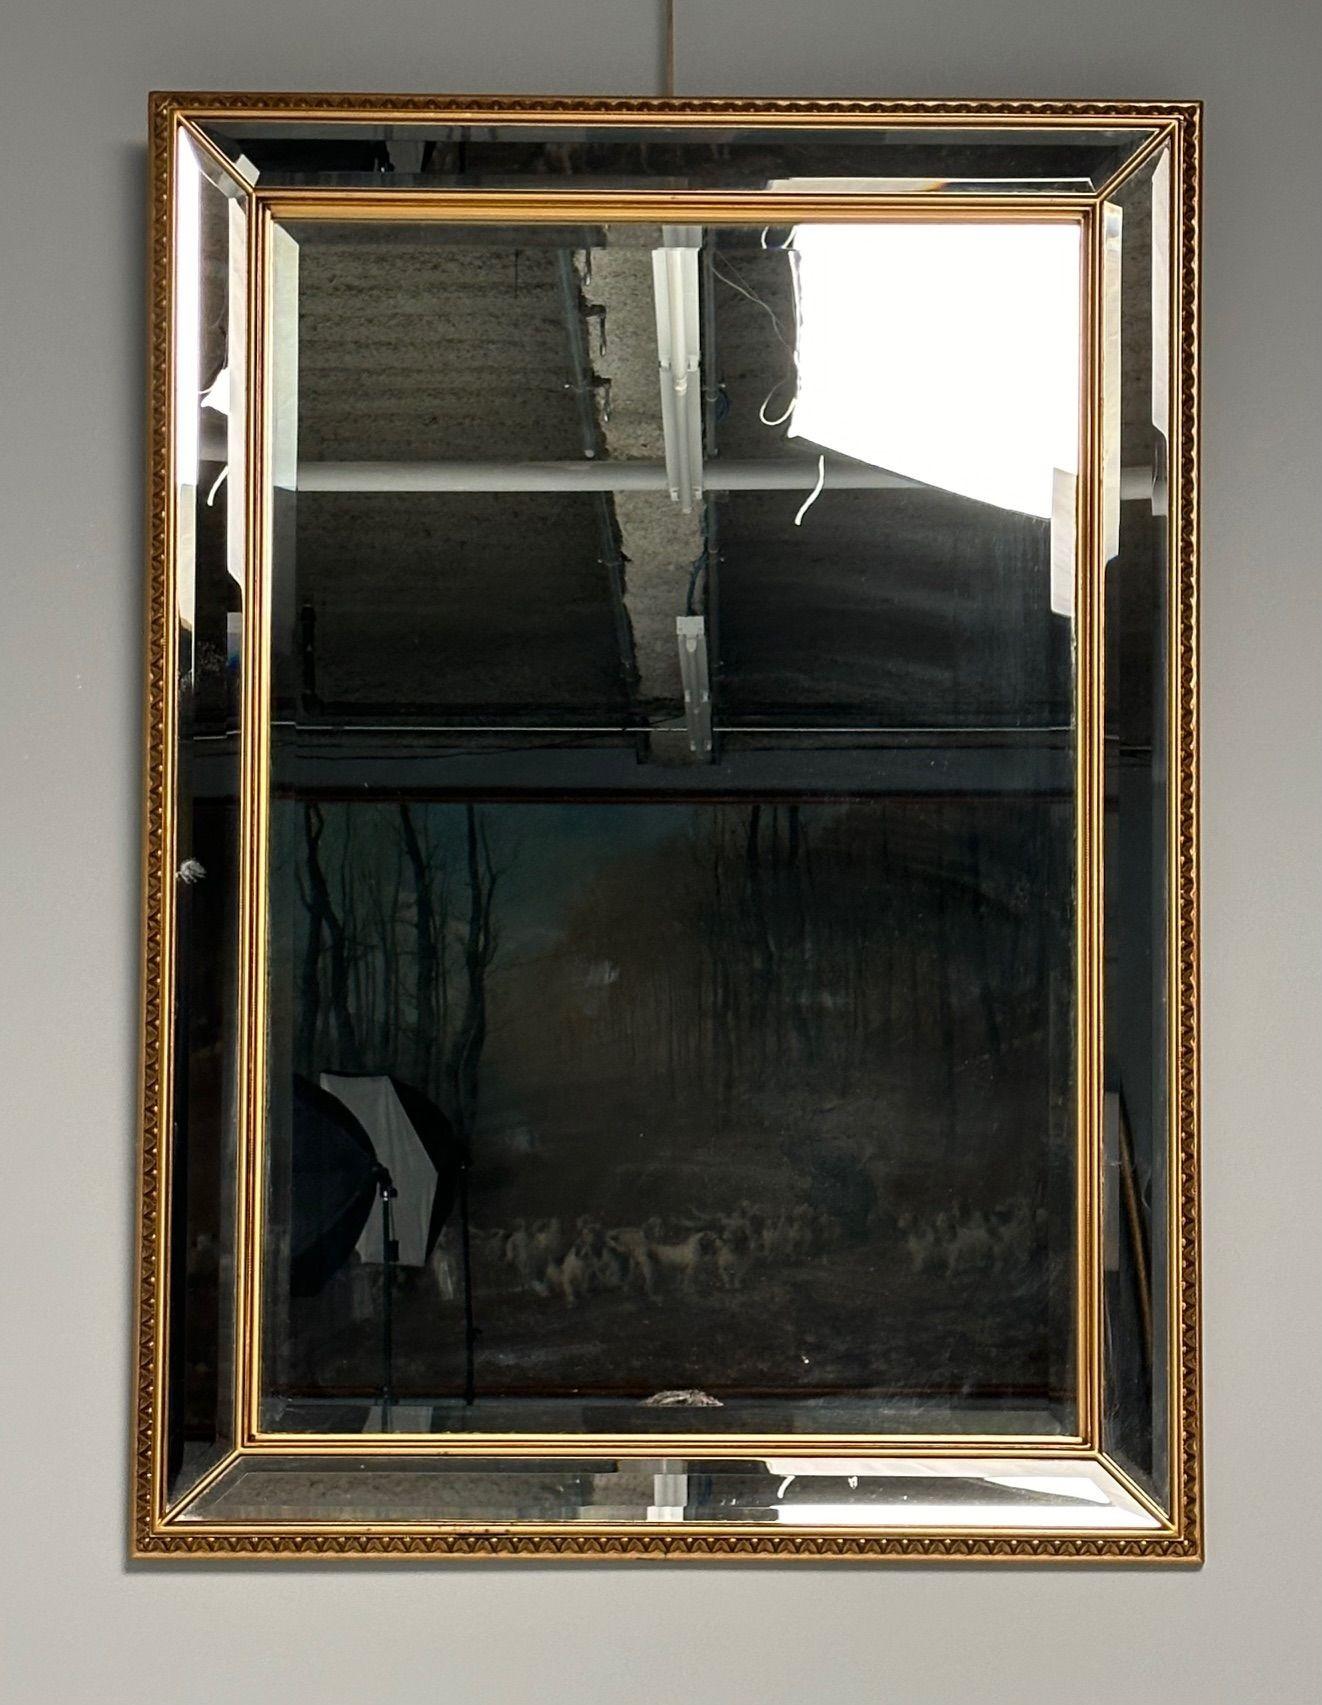 Modern Vergoldeter, abgeschrägter Wand-, Konsolen- oder Kaminsims-Spiegel

Mit einem abgeschrägten Mittelspiegel, der von einem auf Gehrung geschnittenen, abgeschrägten Spiegel in einem doppelt vergoldeten Rahmen umrahmt ist.

42H x 30W x 1.5D